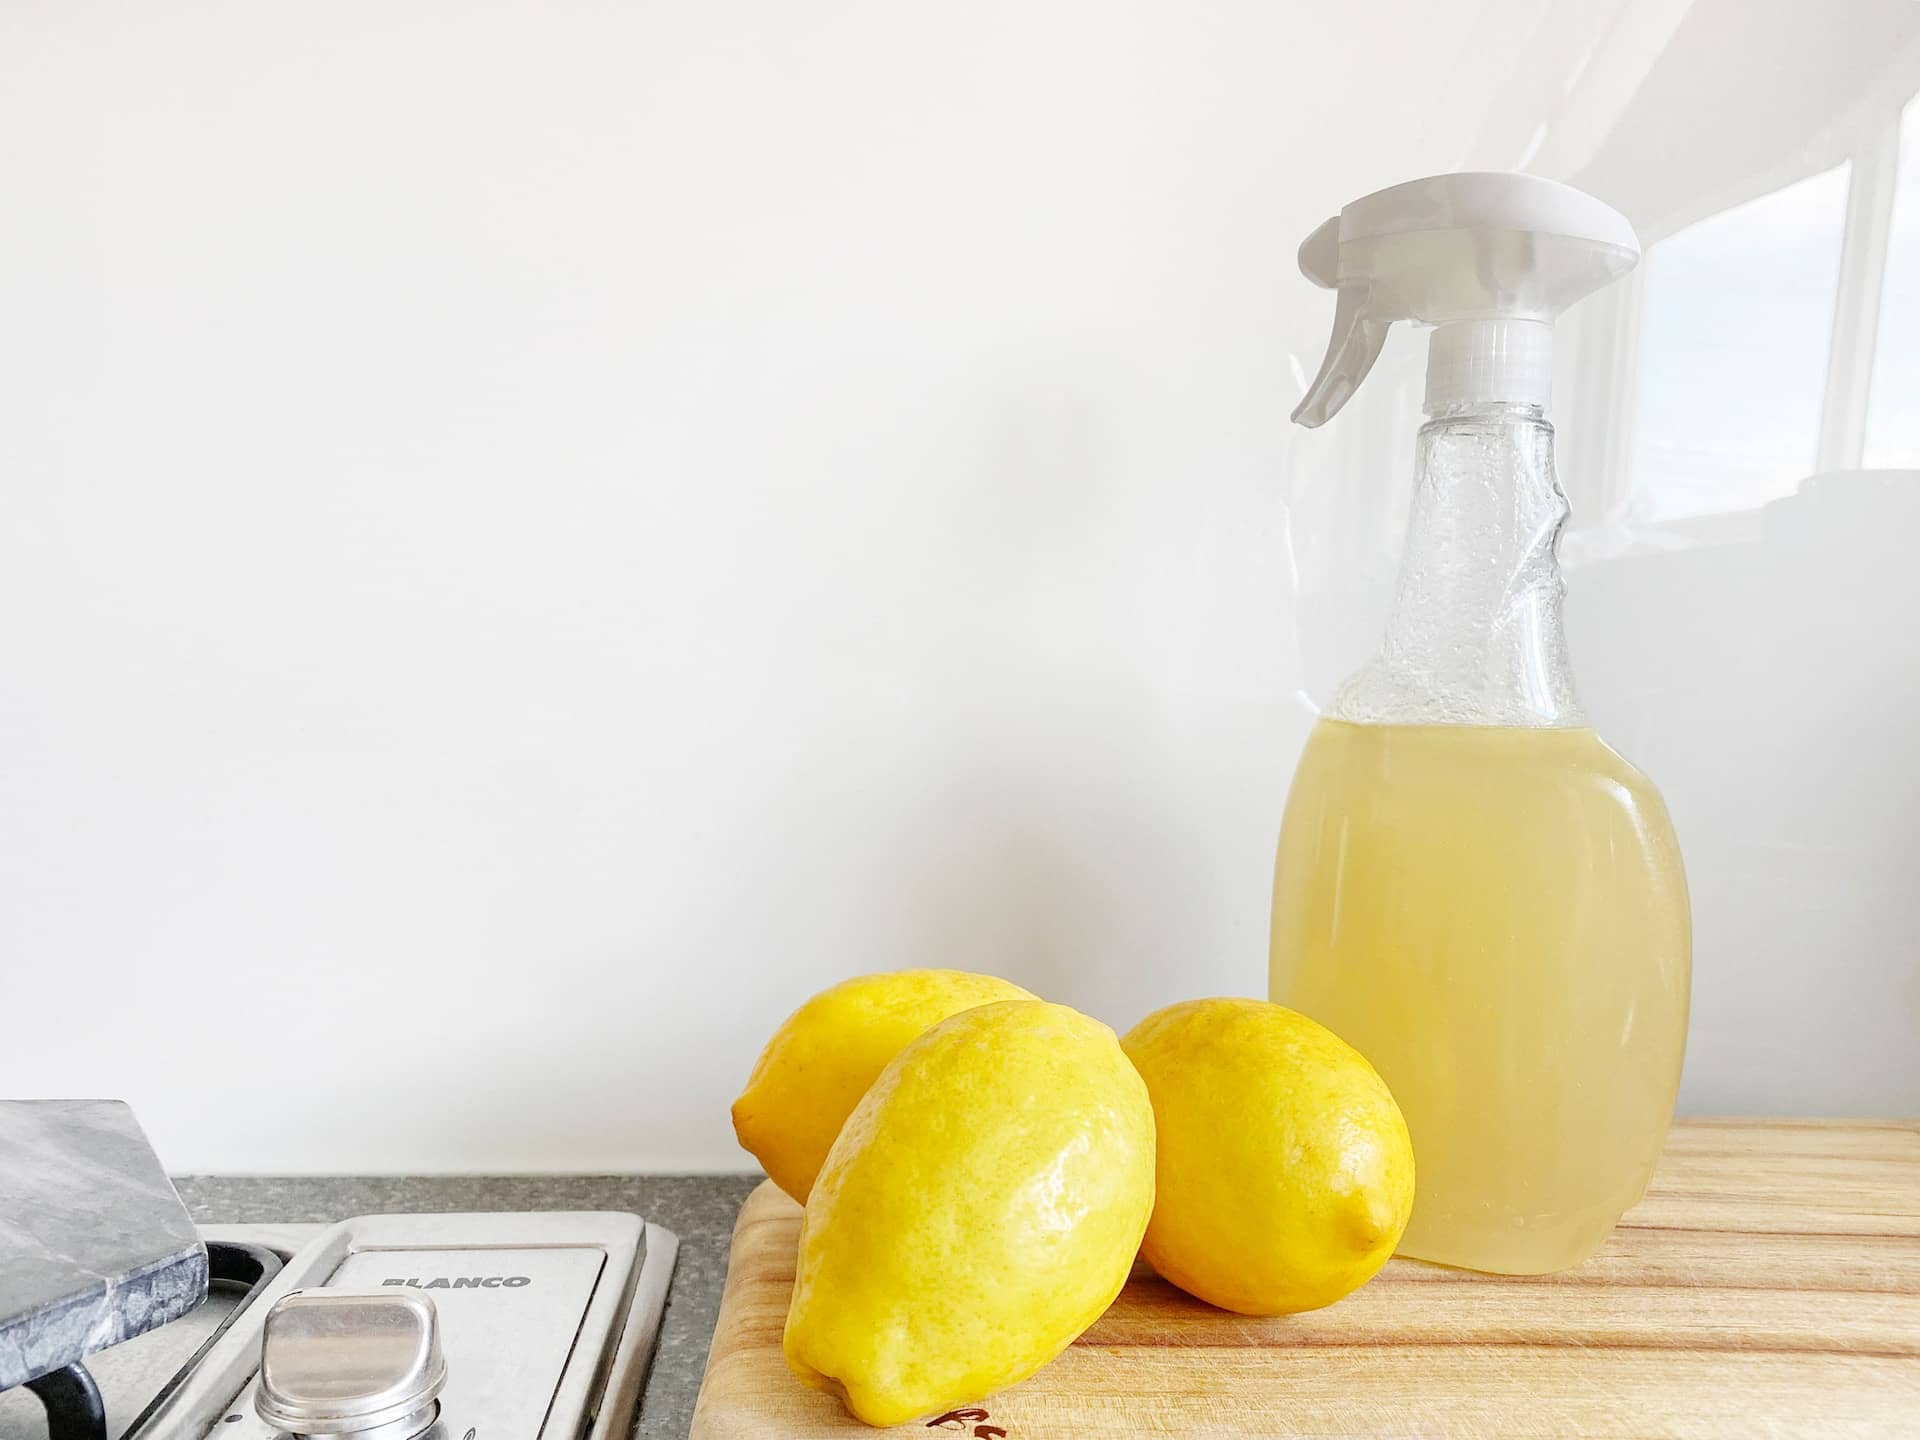 lemons next to a bottle of vinegar